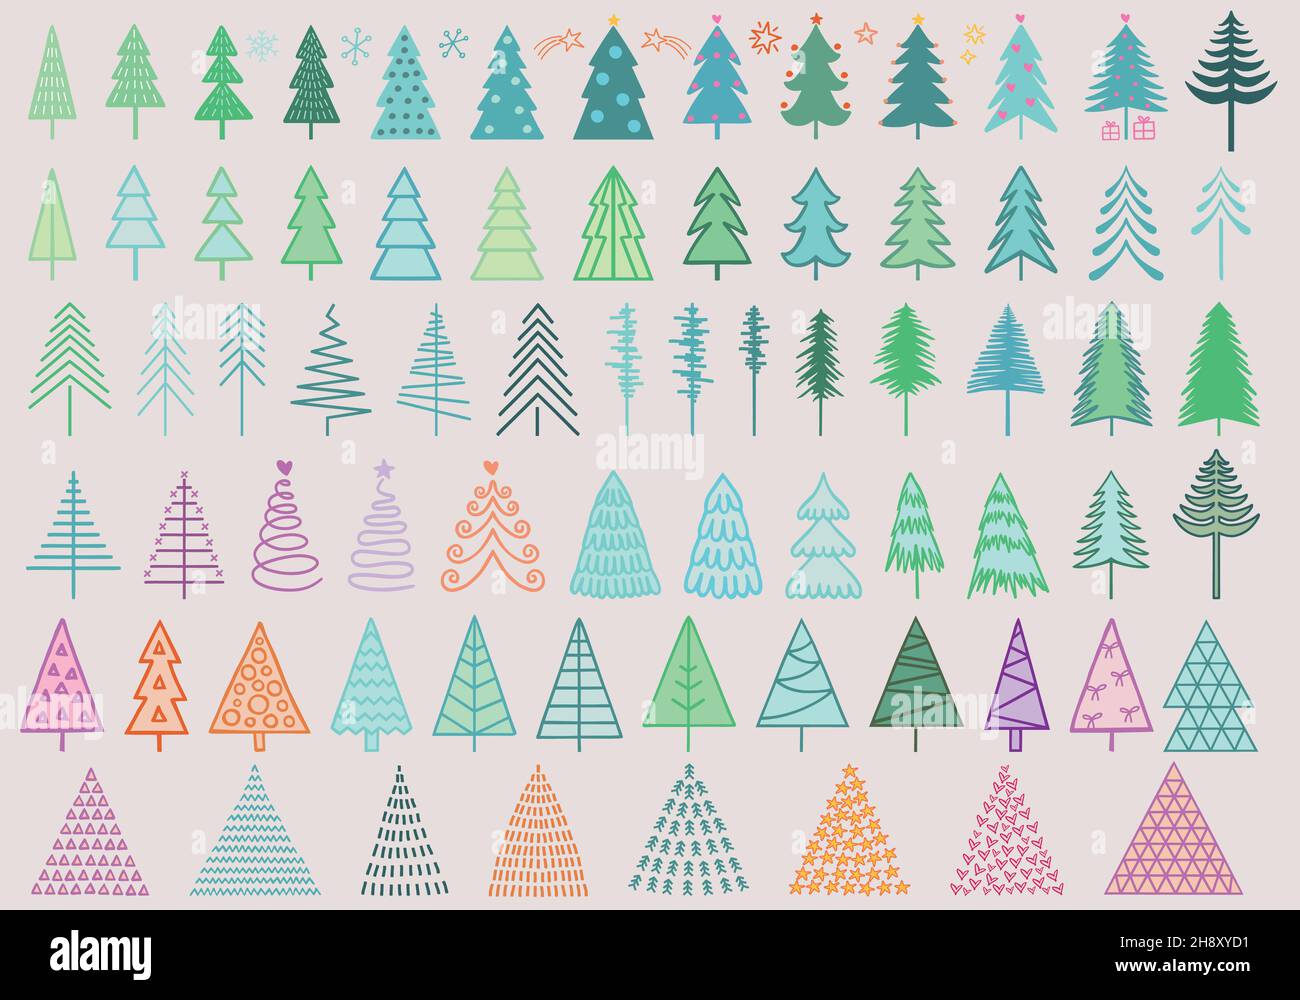 Bunte handgezeichnete Weihnachtsbäume für einfache, moderne Grußkarten, Weihnachtsdekoration, Set von Vektor-Design-Elementen Stock Vektor